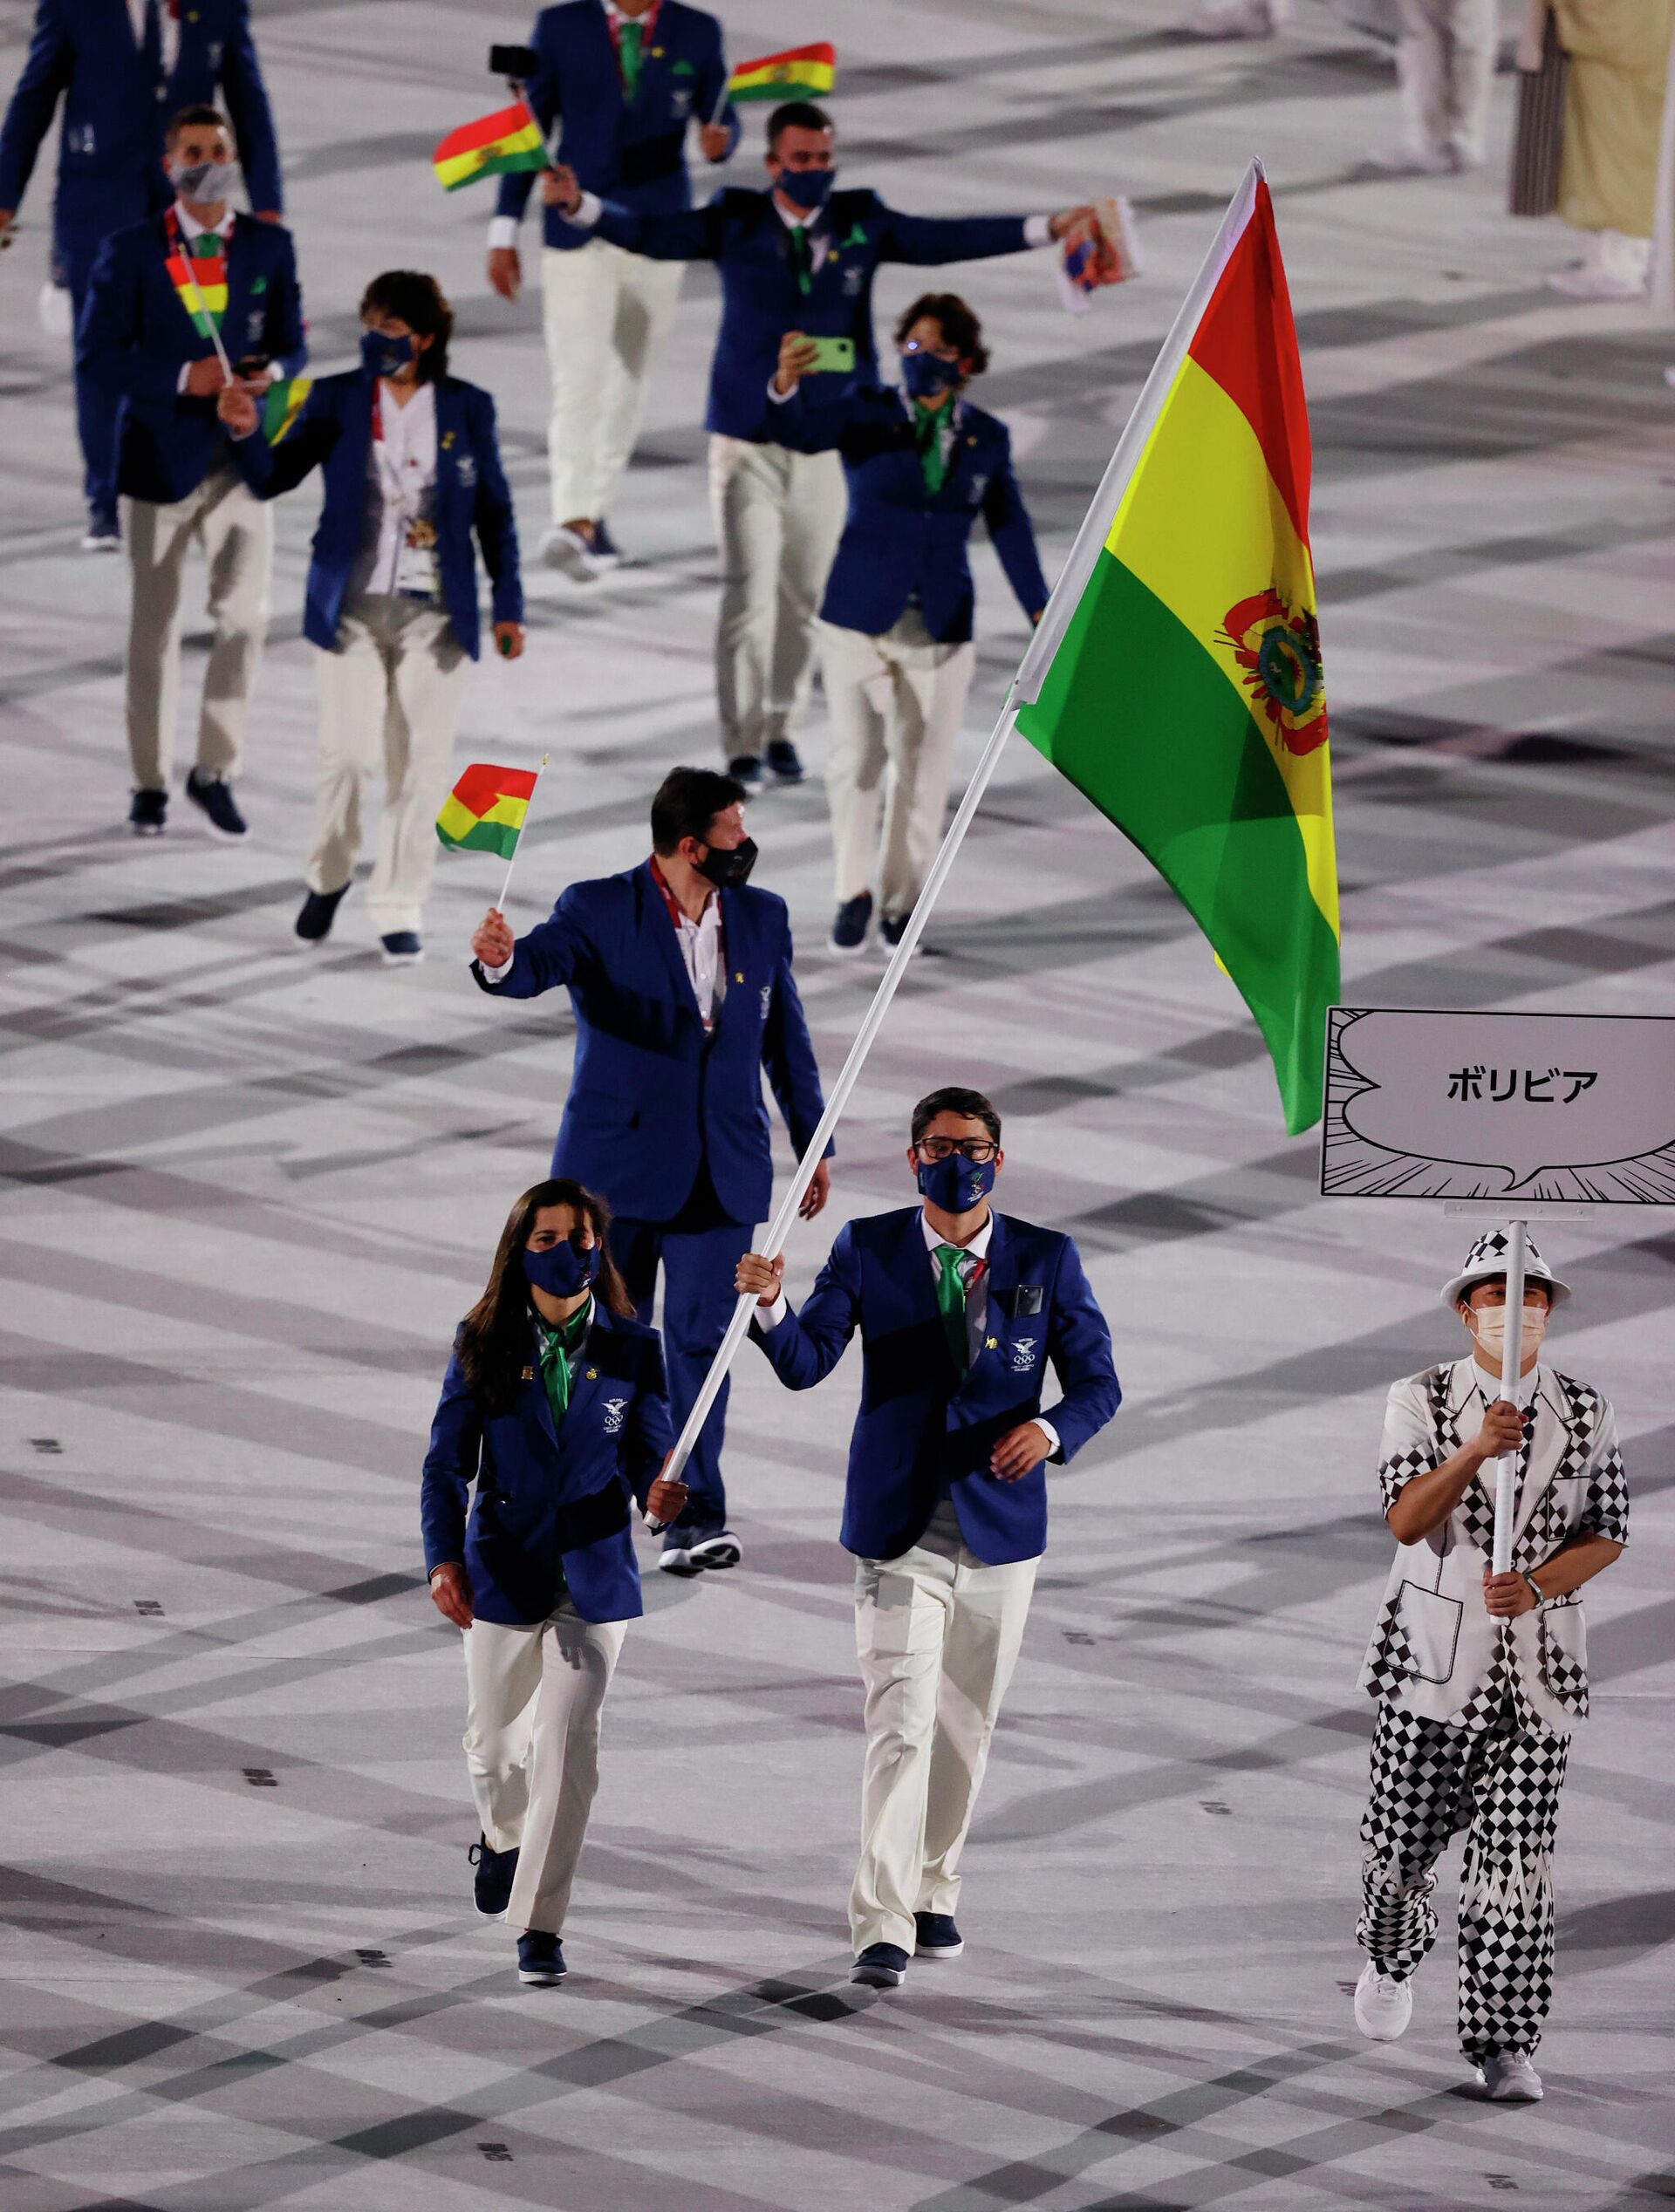 Los representantes bolivianos en los Juegos Olímpicos de Tokio - Sputnik Mundo, 1920, 23.07.2021